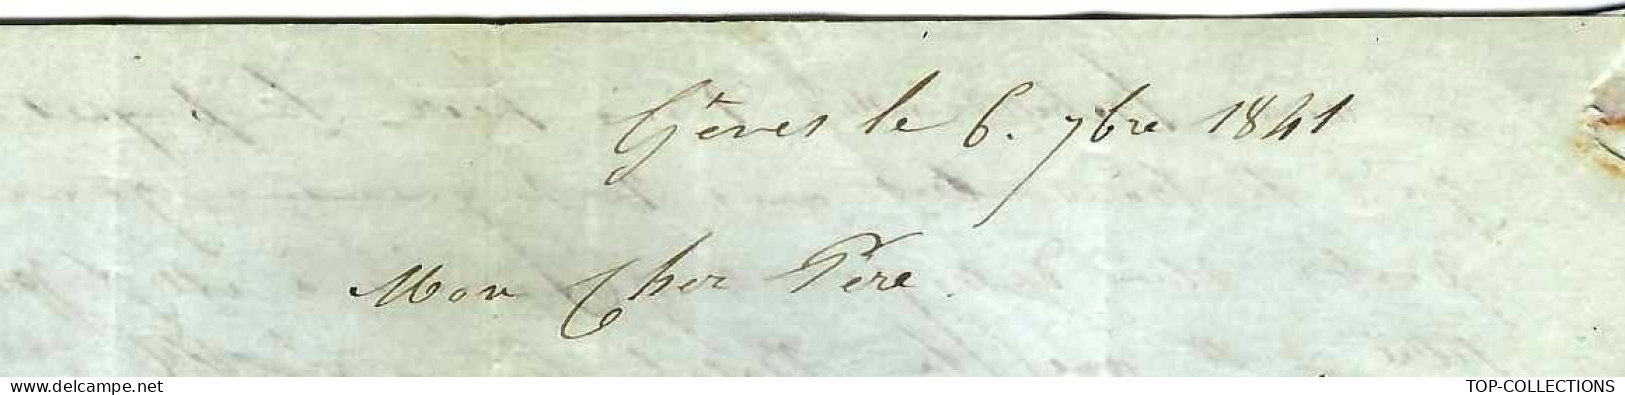 1841 « OUTREMER MARSEILLE  1841 Gênes  Genova Gust. Honnoré  sign. maçonnique => son père Louis Honnoré  NEGOCE COMMERCE